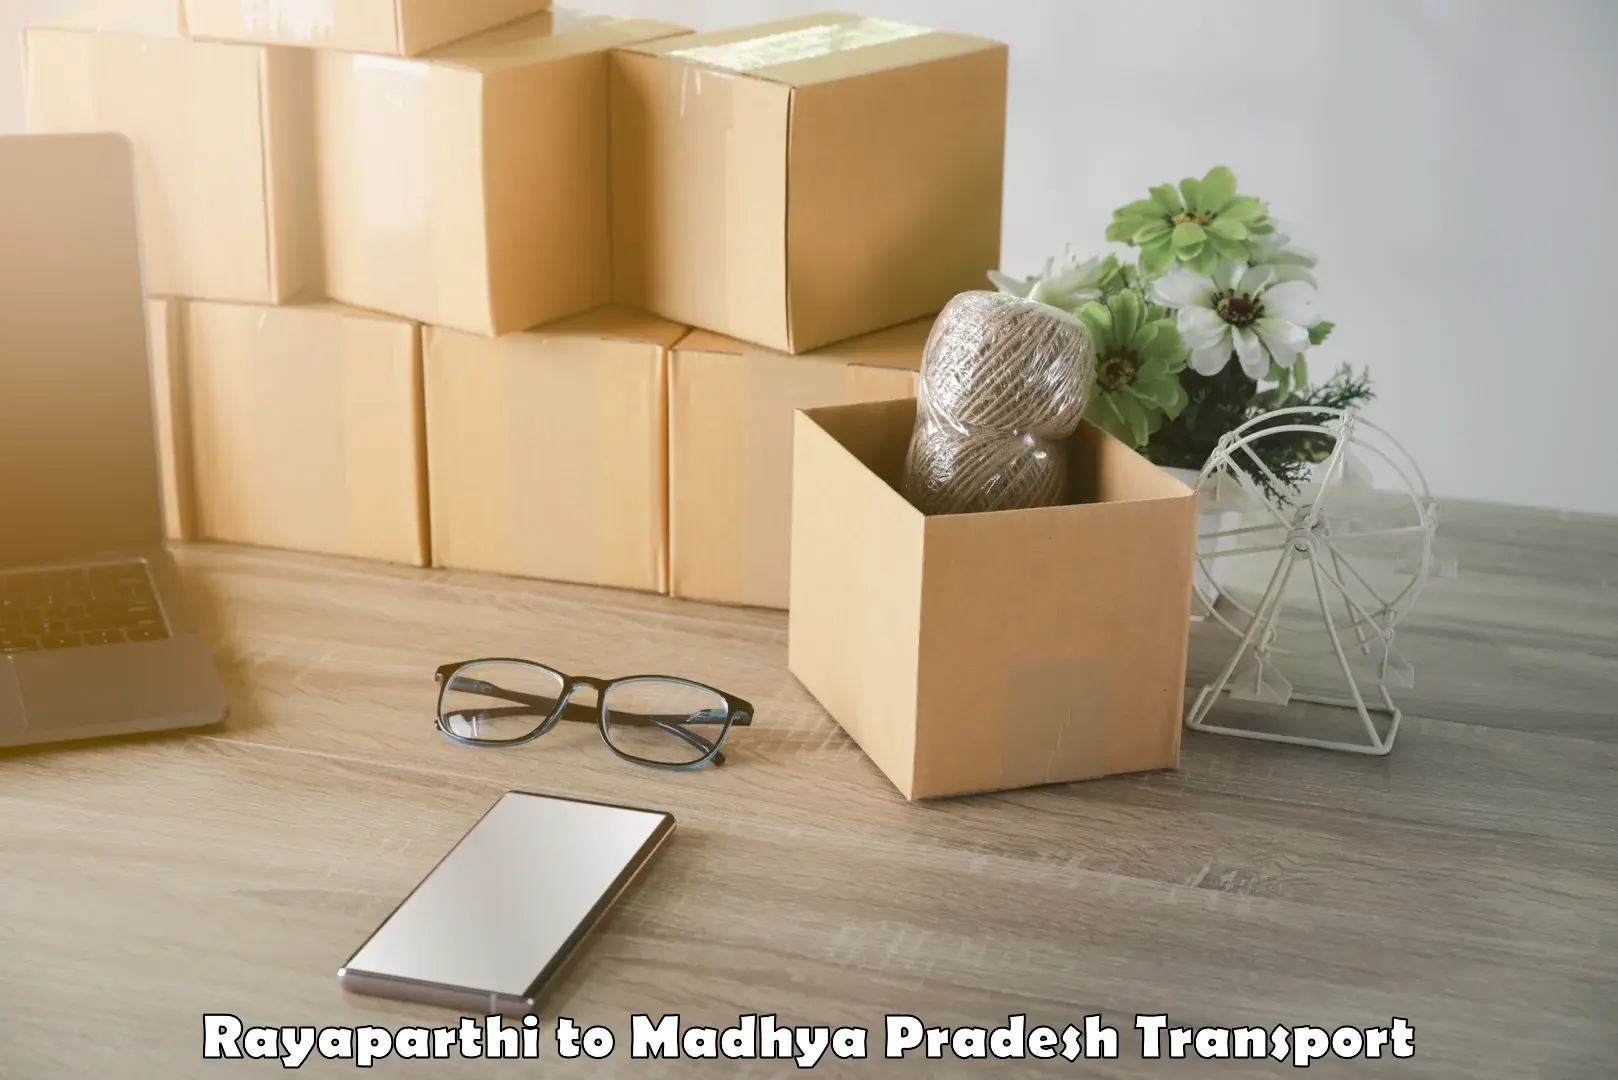 International cargo transportation services Rayaparthi to Madhya Pradesh